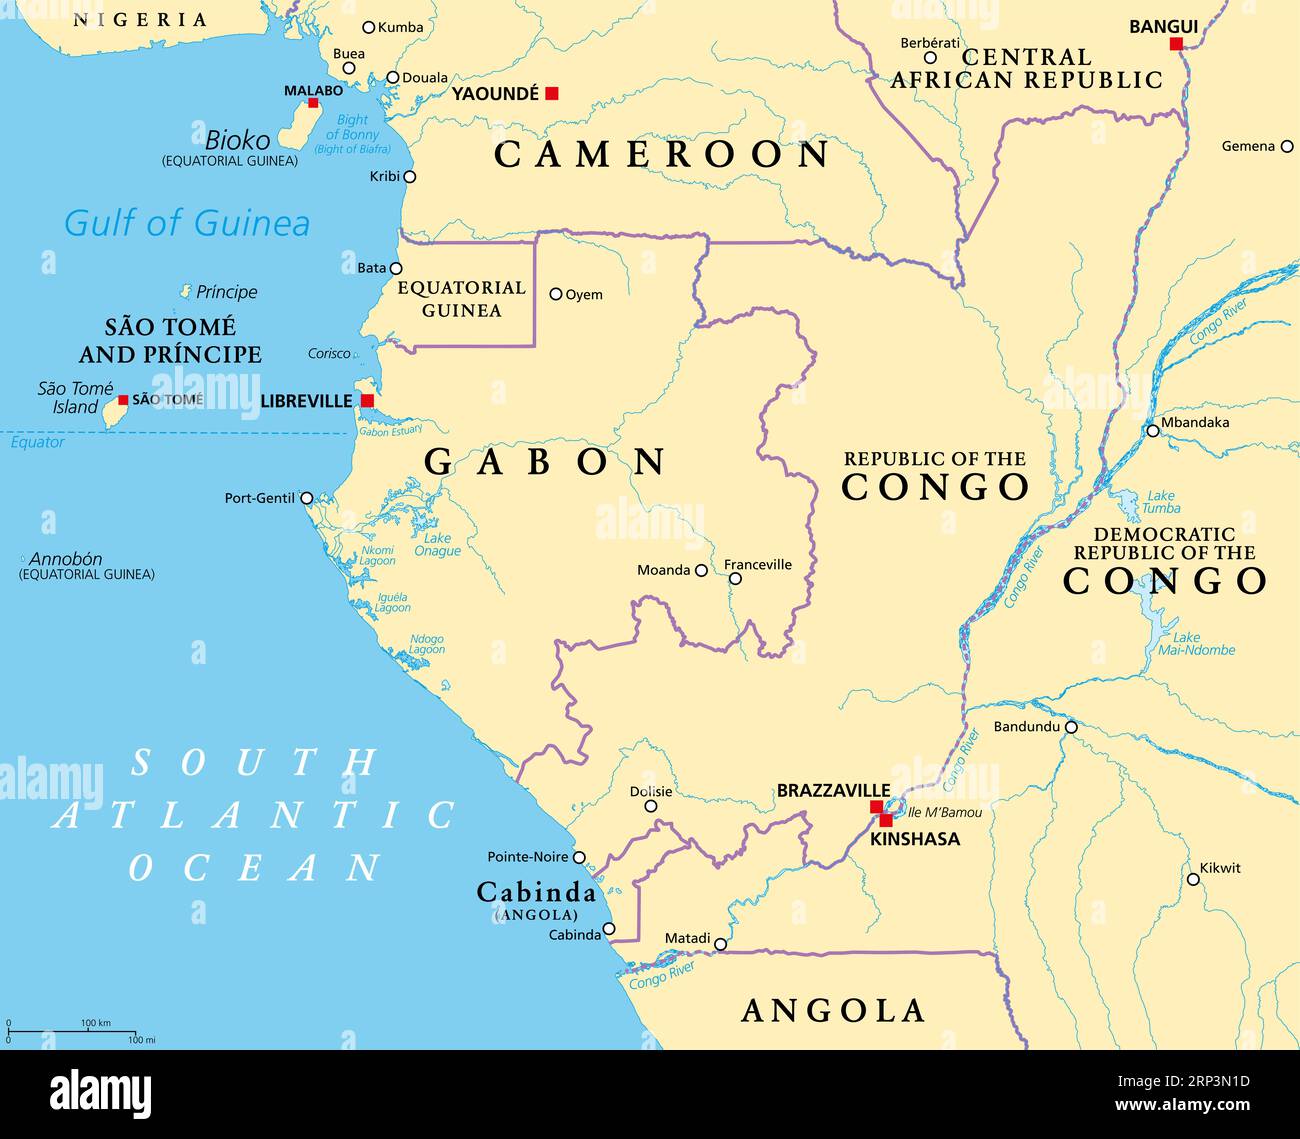 Ein Teil Zentralafrikas, eine Subregion des afrikanischen Kontinents, politische Landkarte, mit Hauptstädten, Grenzen und größten Städten. Stockfoto